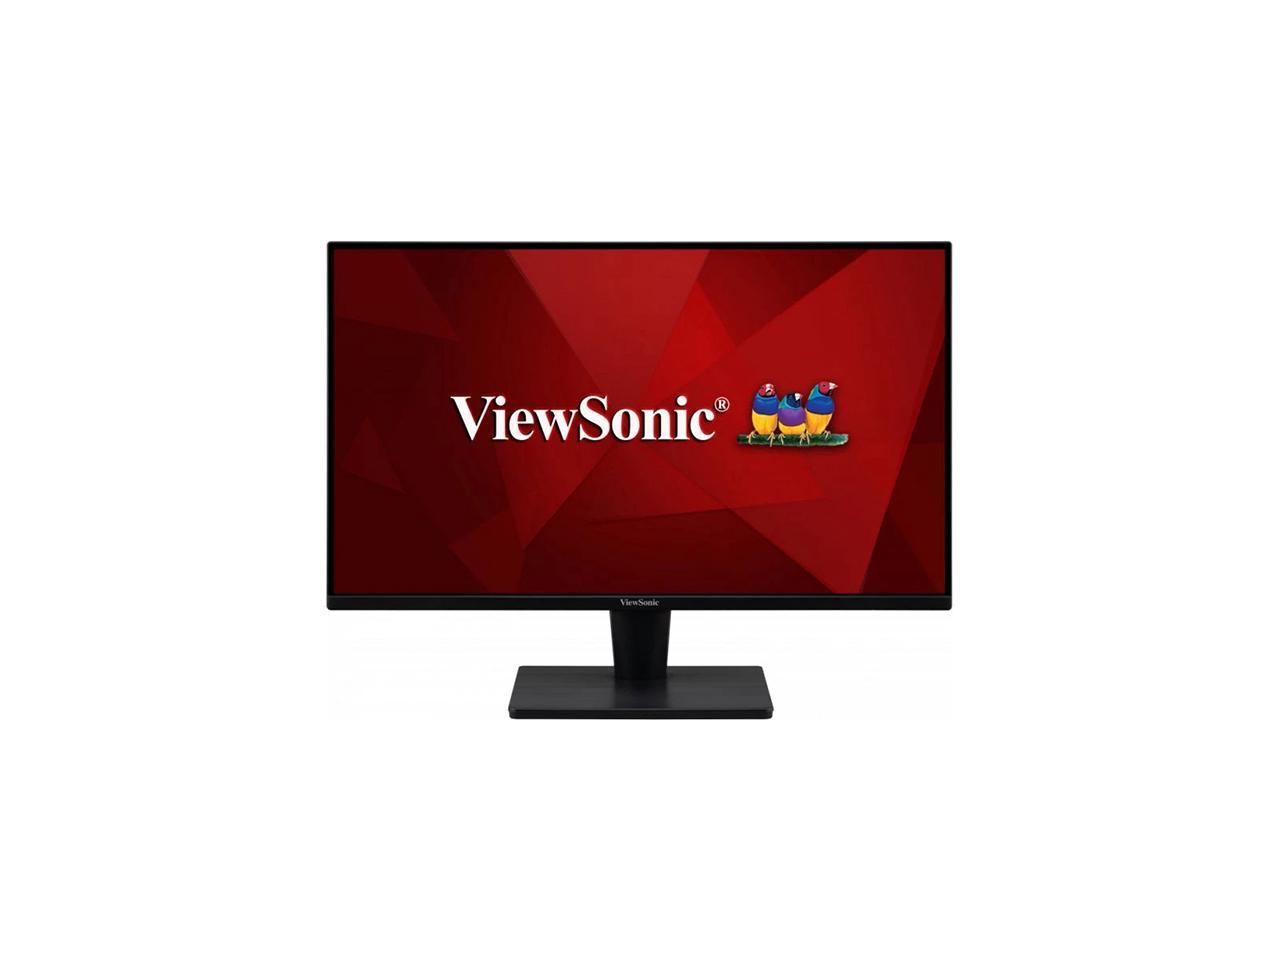 ViewSonic 27" 75 Hz VA QHD Monitor 4 ms FreeSync (AMD Adaptive Sync) 2560 x 1440 (2K) HDMI, DisplayPort, Audio Built-in Speakers VA2715-2K-MHD